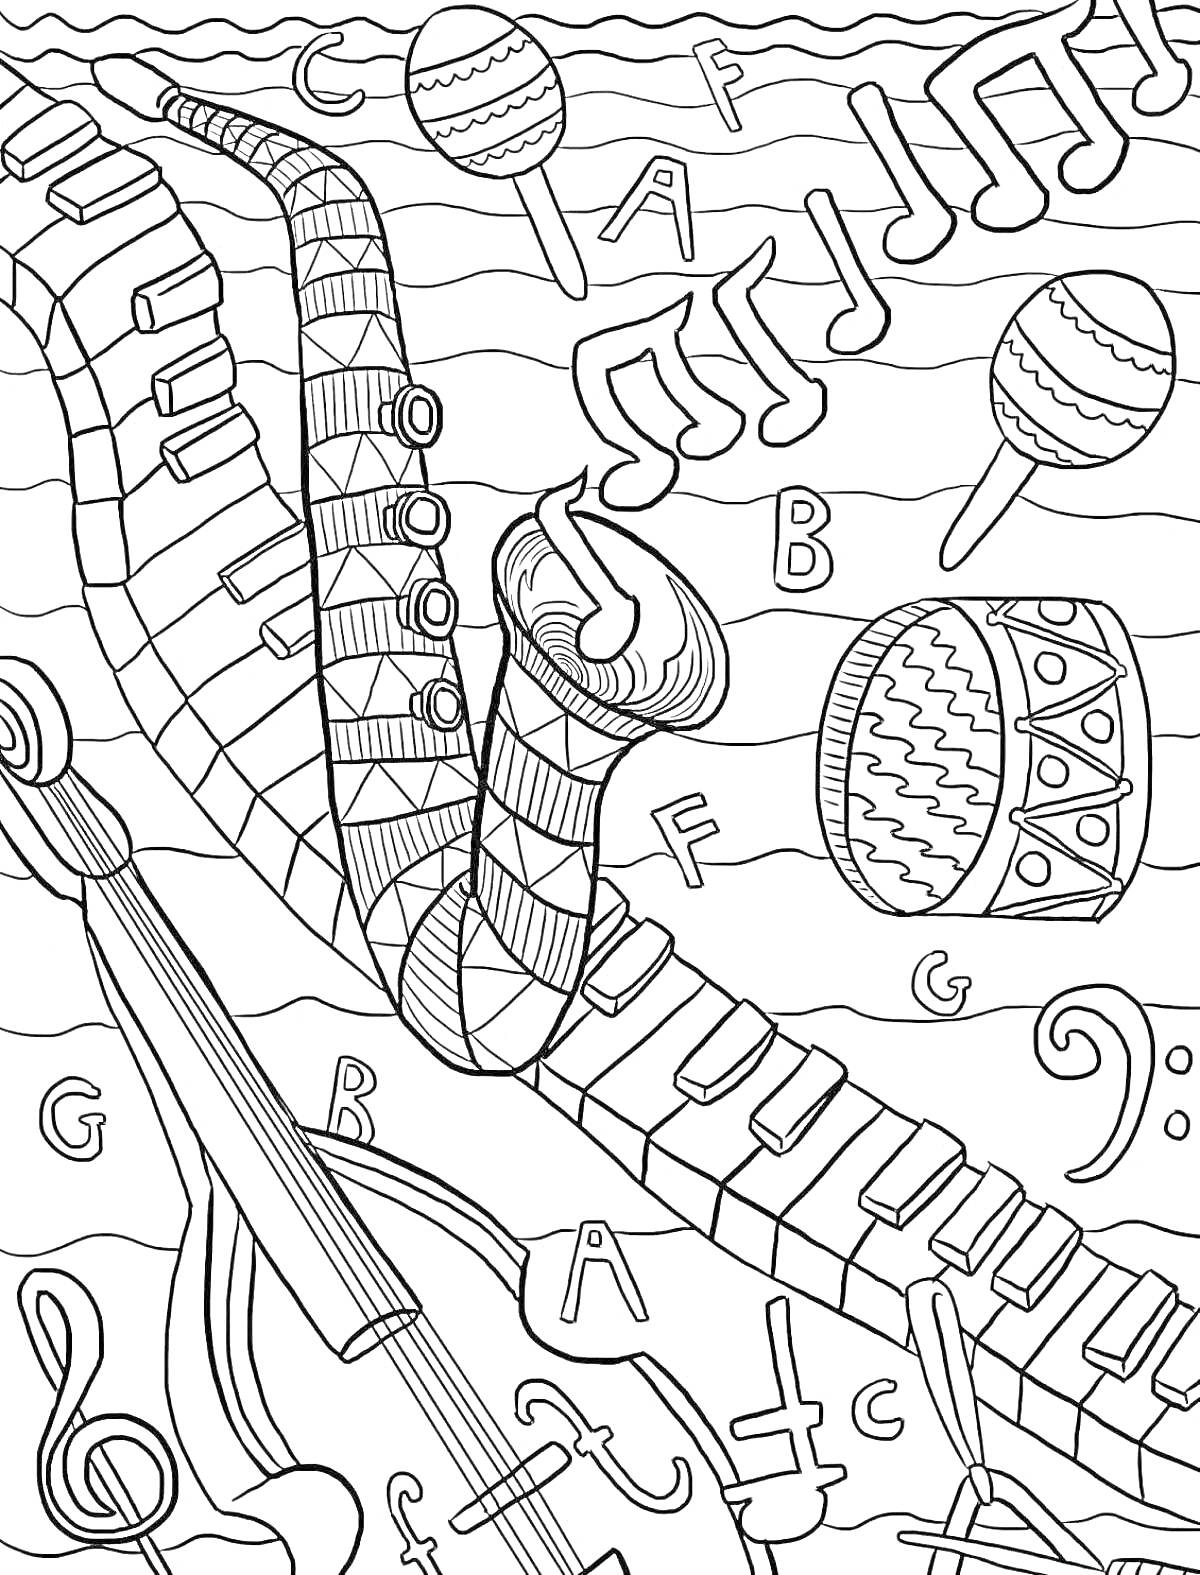 Раскраска с изображением трубы, клавиш пианино, скрипки, барабана, маракасов, музыкальных нот и букв со значками